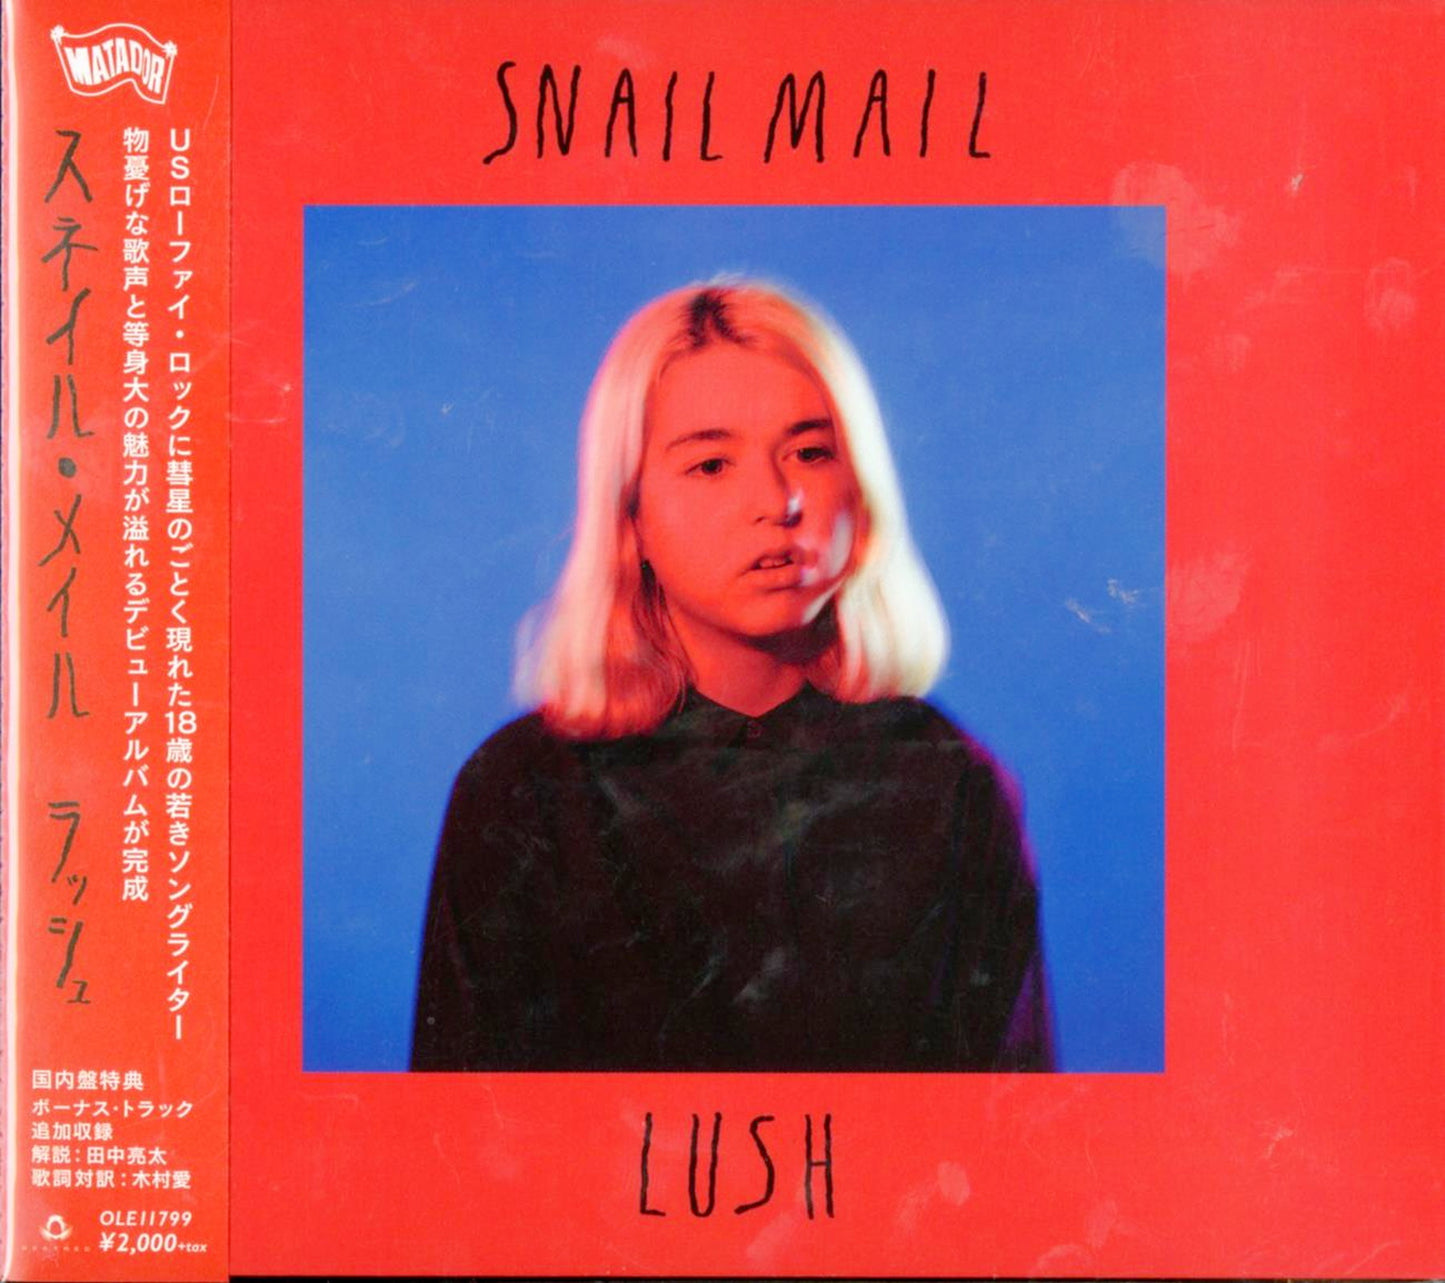 Snail Mail - Lush - Japan  CD Bonus Track